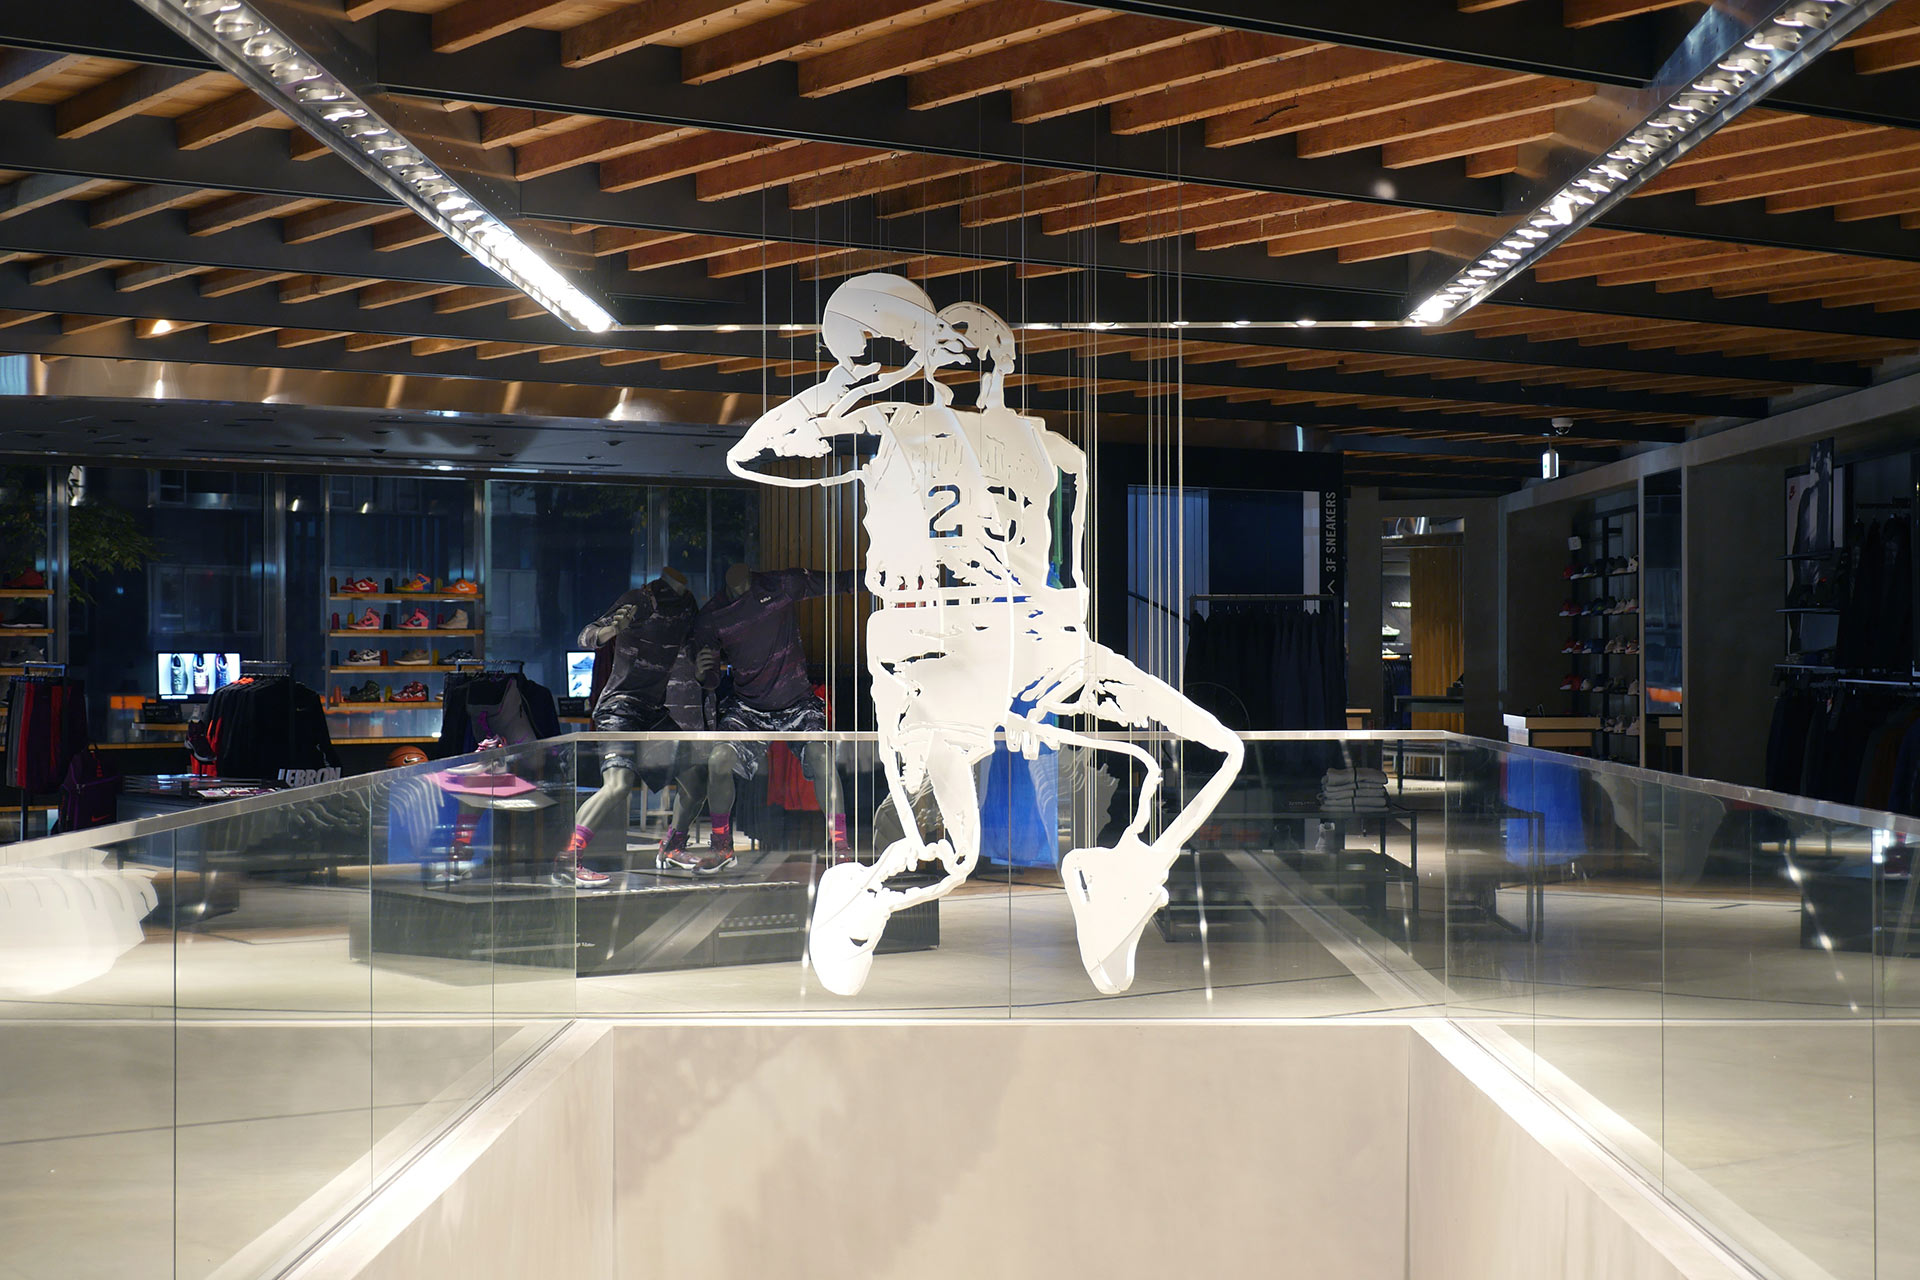 An Amazing 3D Sculpture of Michael Jordan